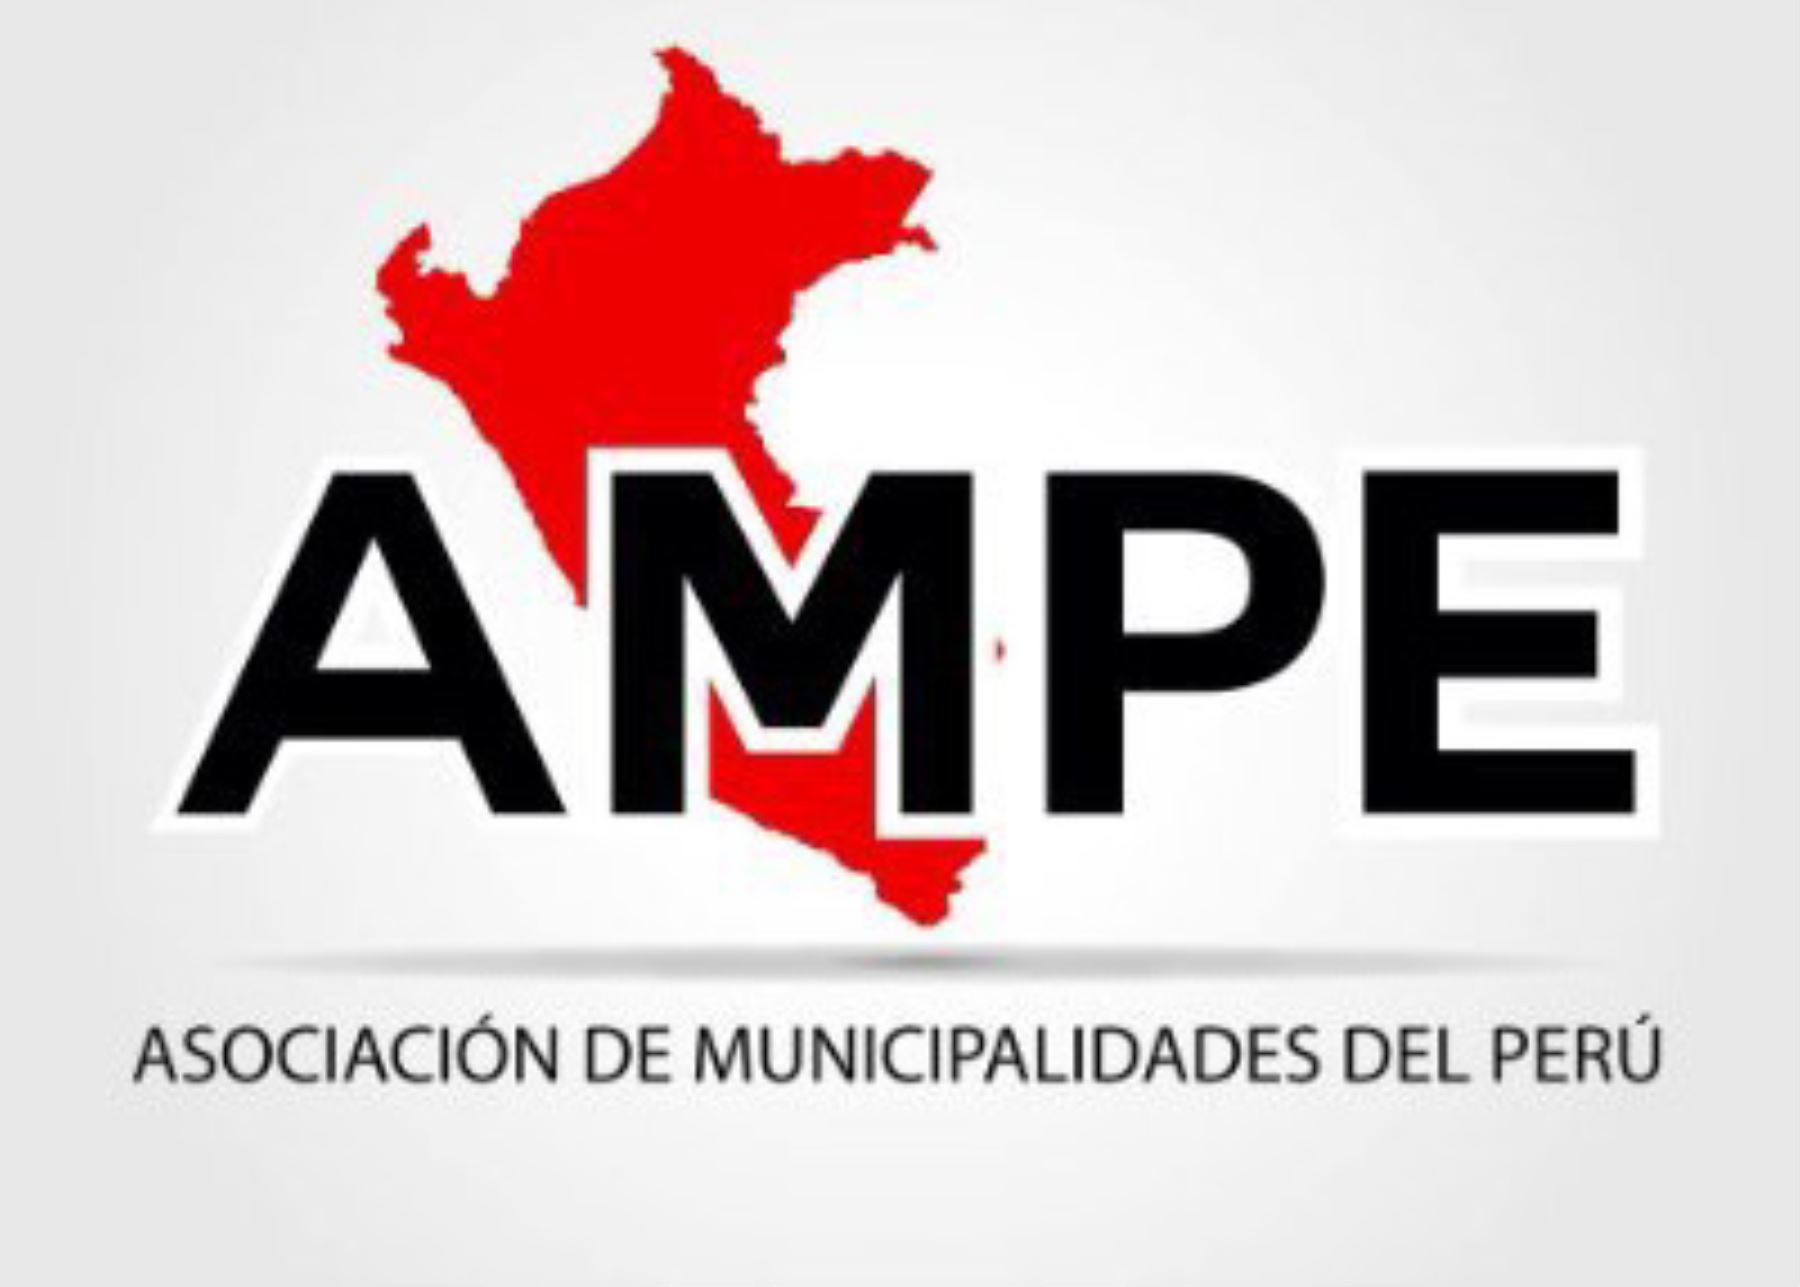 Asociación de Municipalidades del Perú - AMPE.